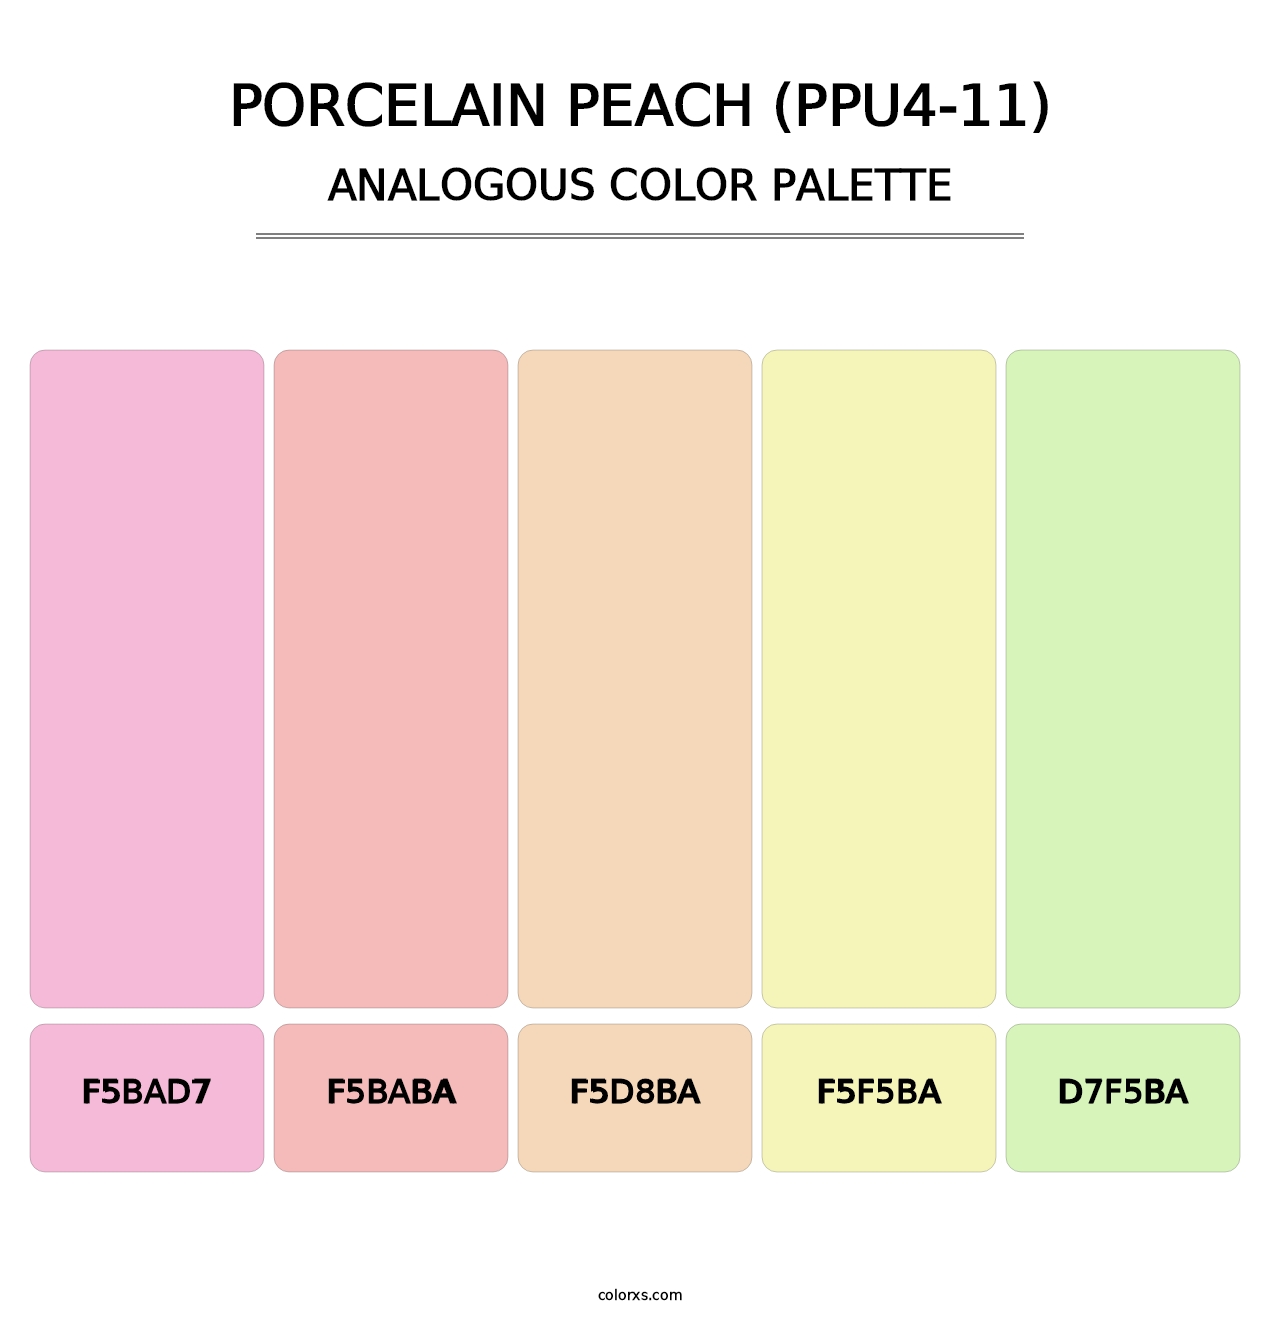 Porcelain Peach (PPU4-11) - Analogous Color Palette